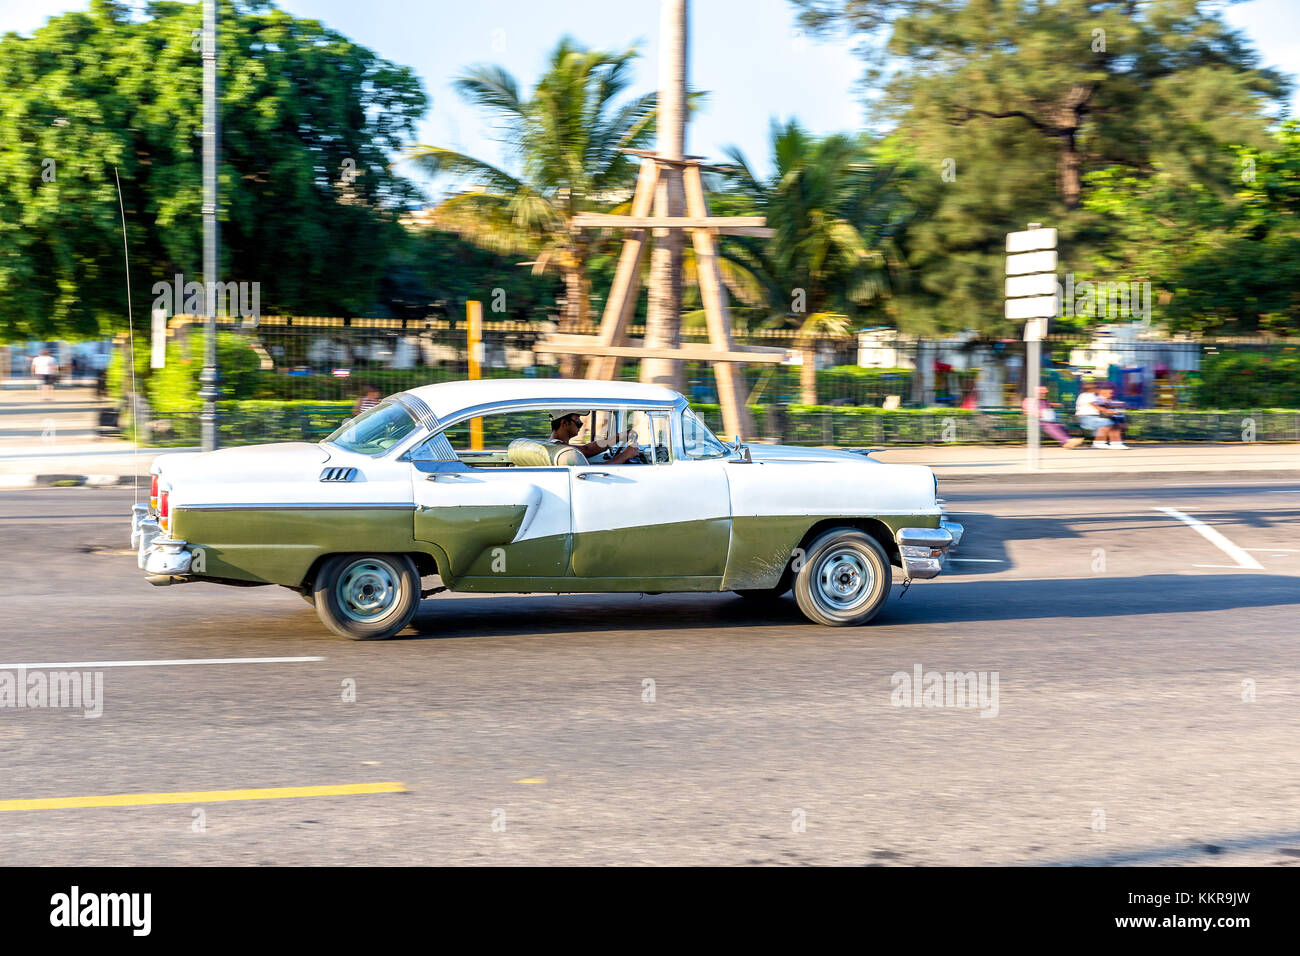 Cuba est la plus grande île des Caraïbes, avec une superficie de 109,884 kilomètres carrés, et la deuxième plus peuplée après Hispaniola, avec plus de 11 millions d'habitants. Banque D'Images